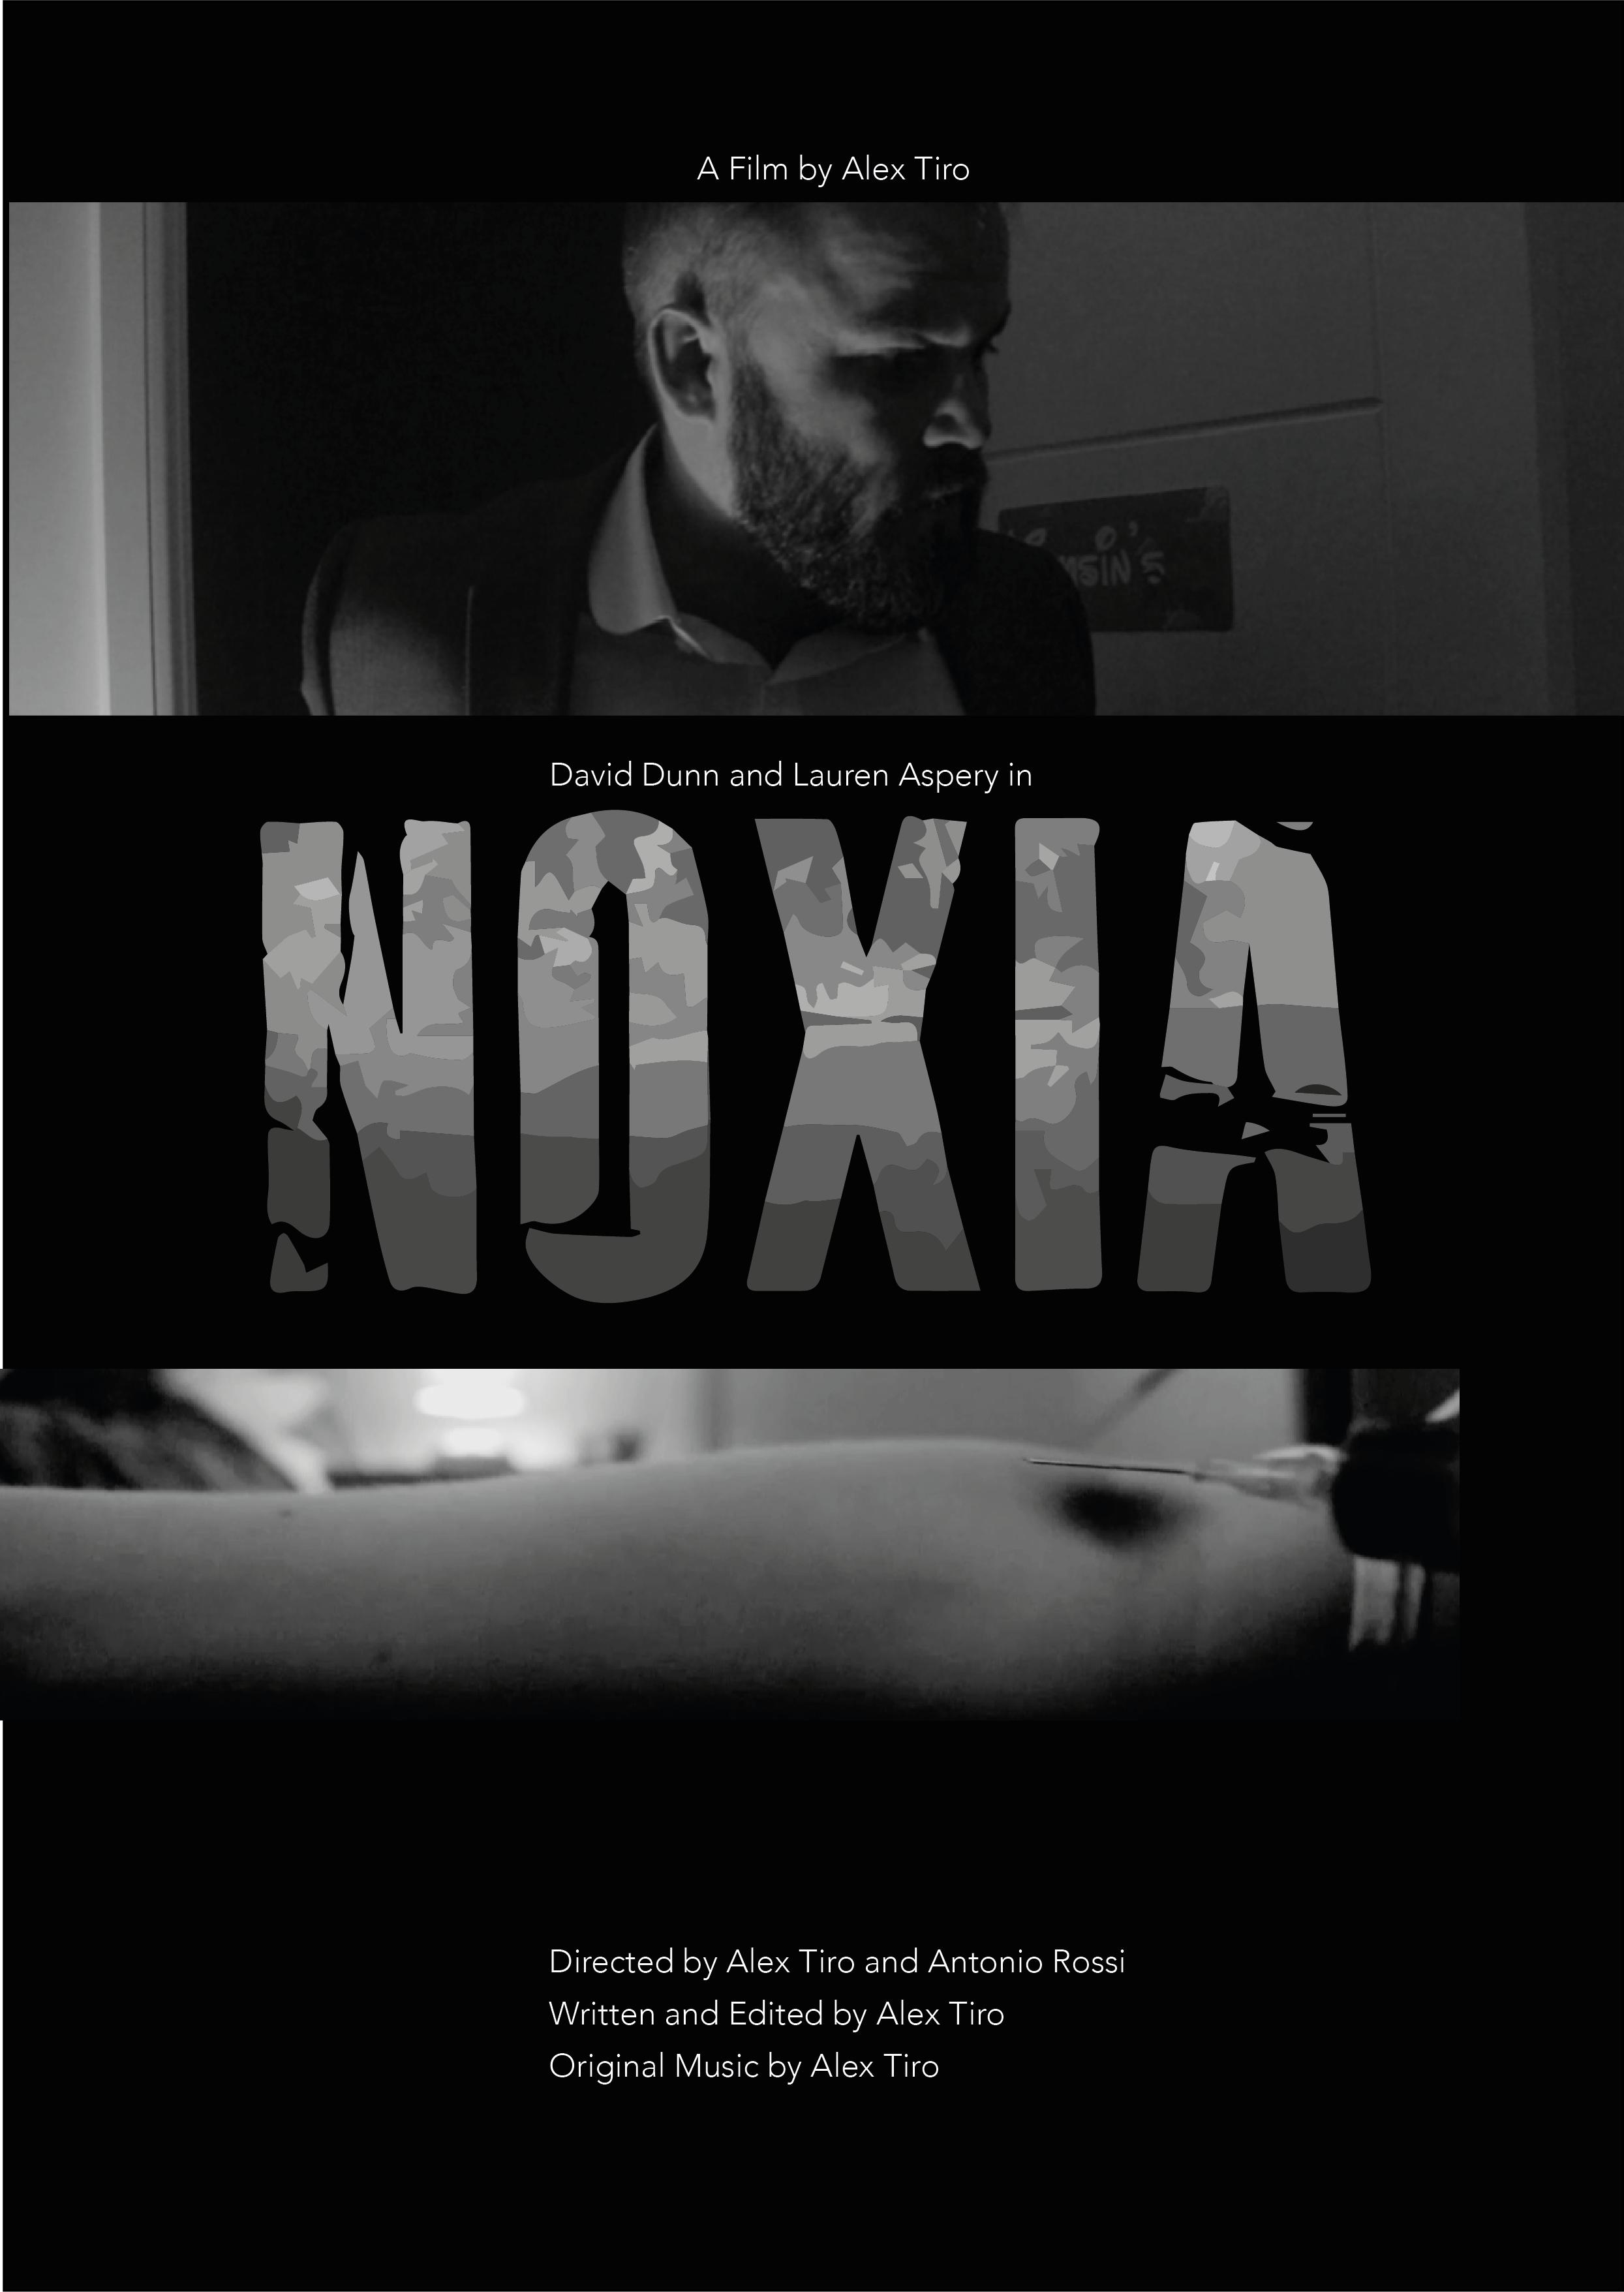 Noxia